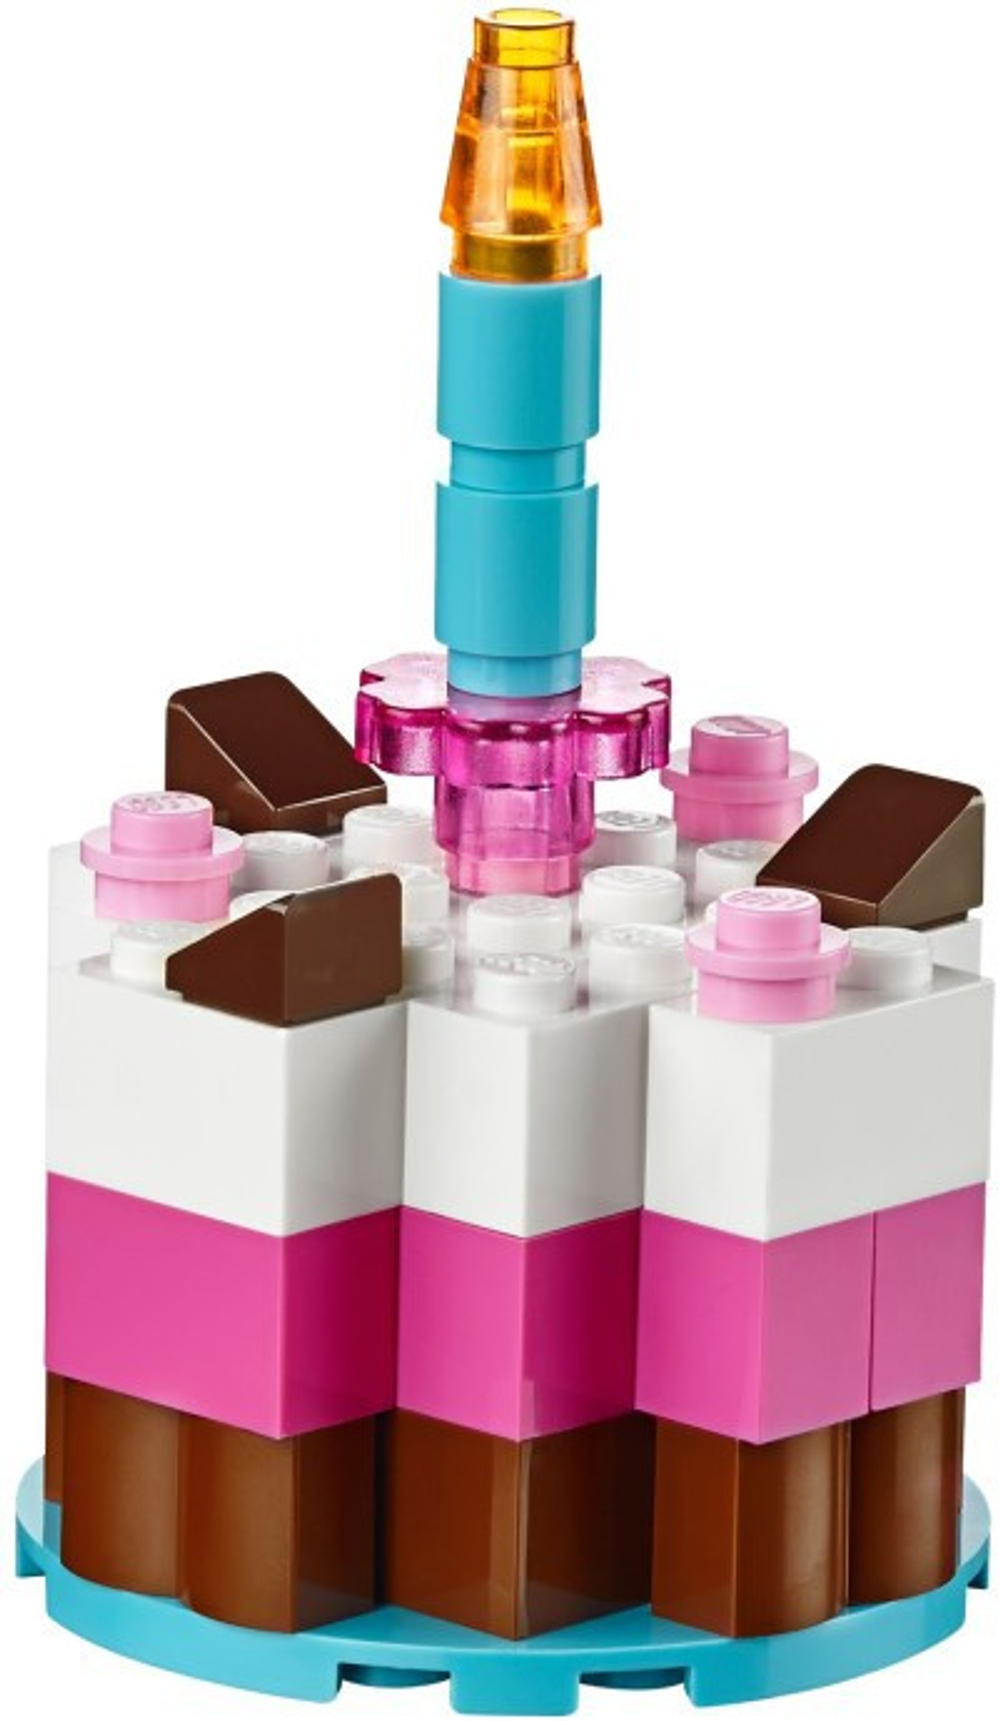 LEGO Classic: Набор для веселого конструирования 10695 — Creative Building Box — Лего Классик